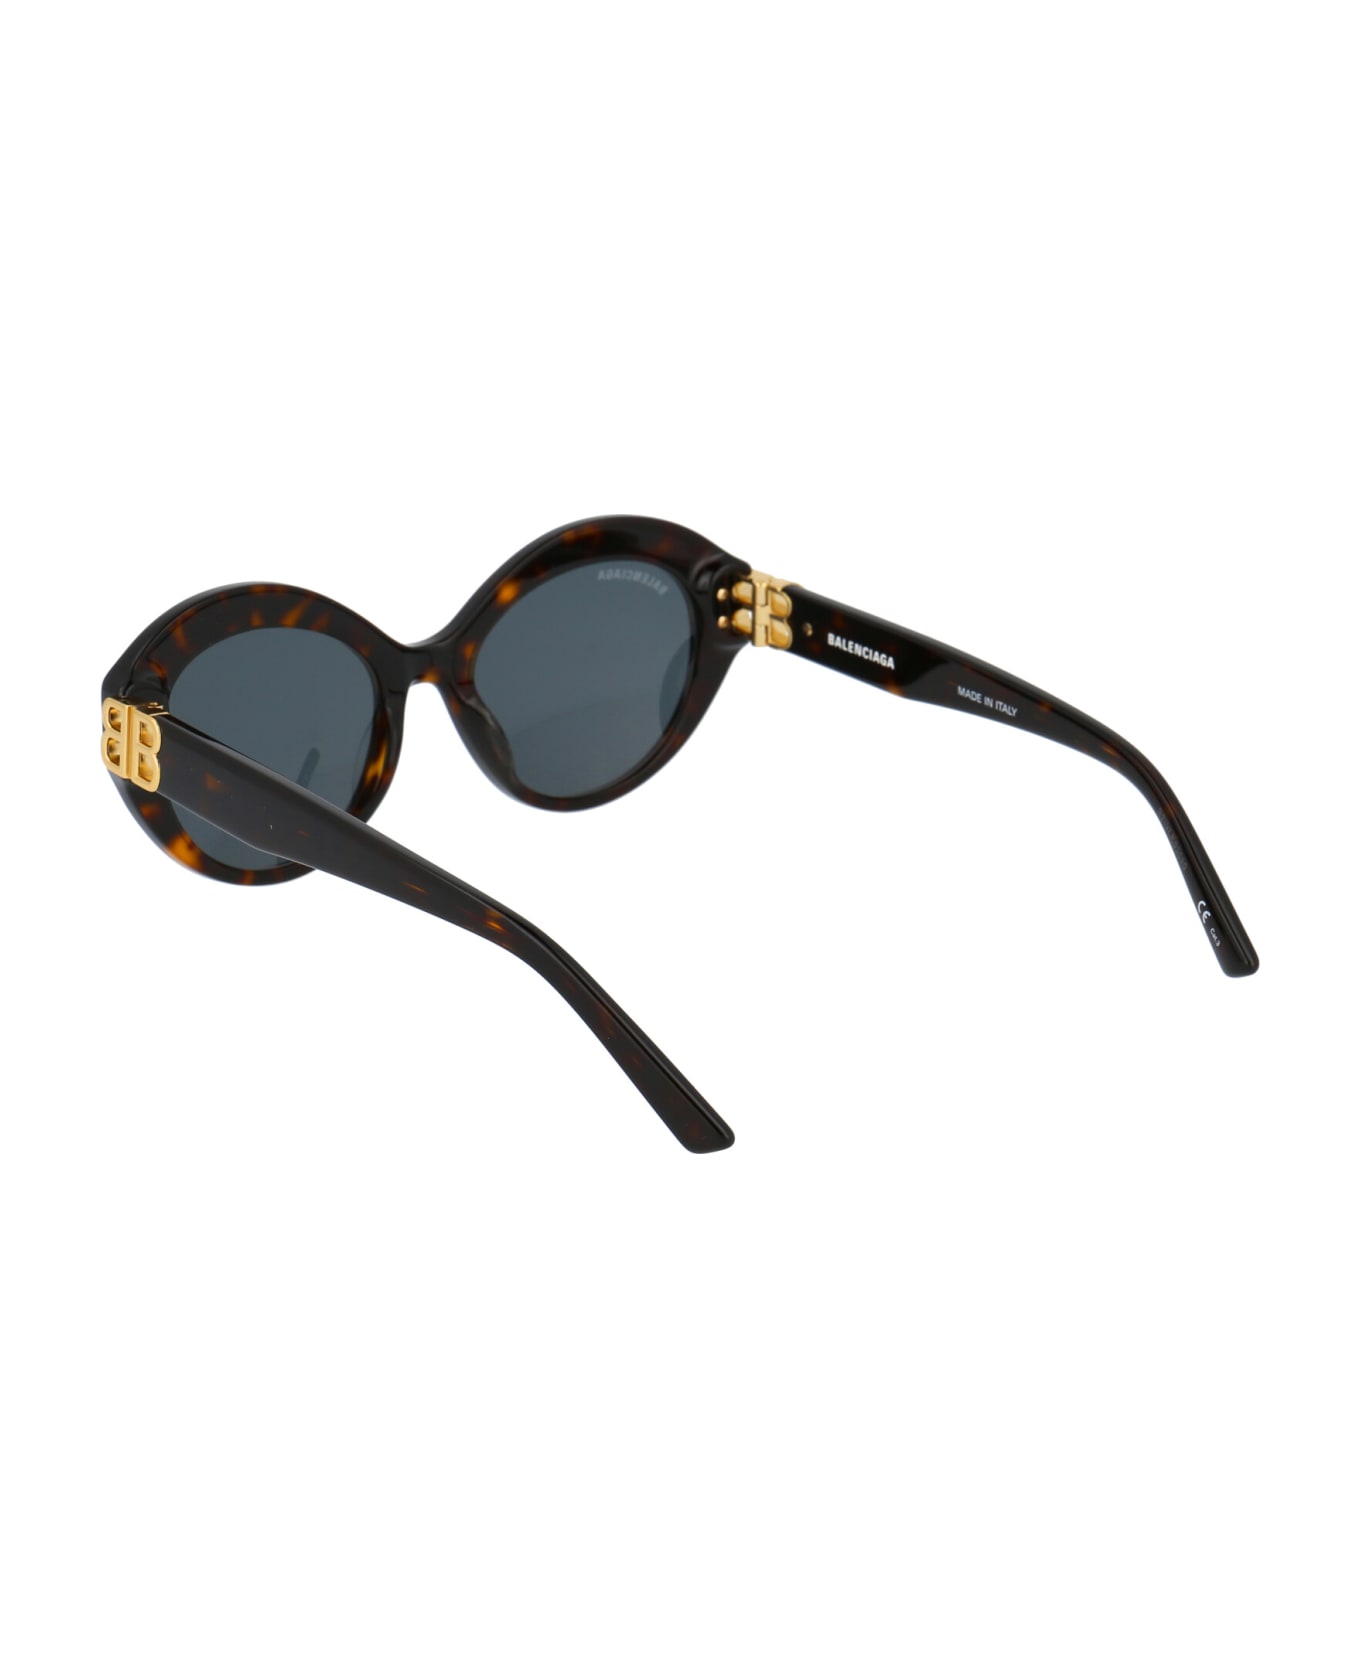 Balenciaga Eyewear Bb0133s Sunglasses - 002 HAVANA GOLD GREEN